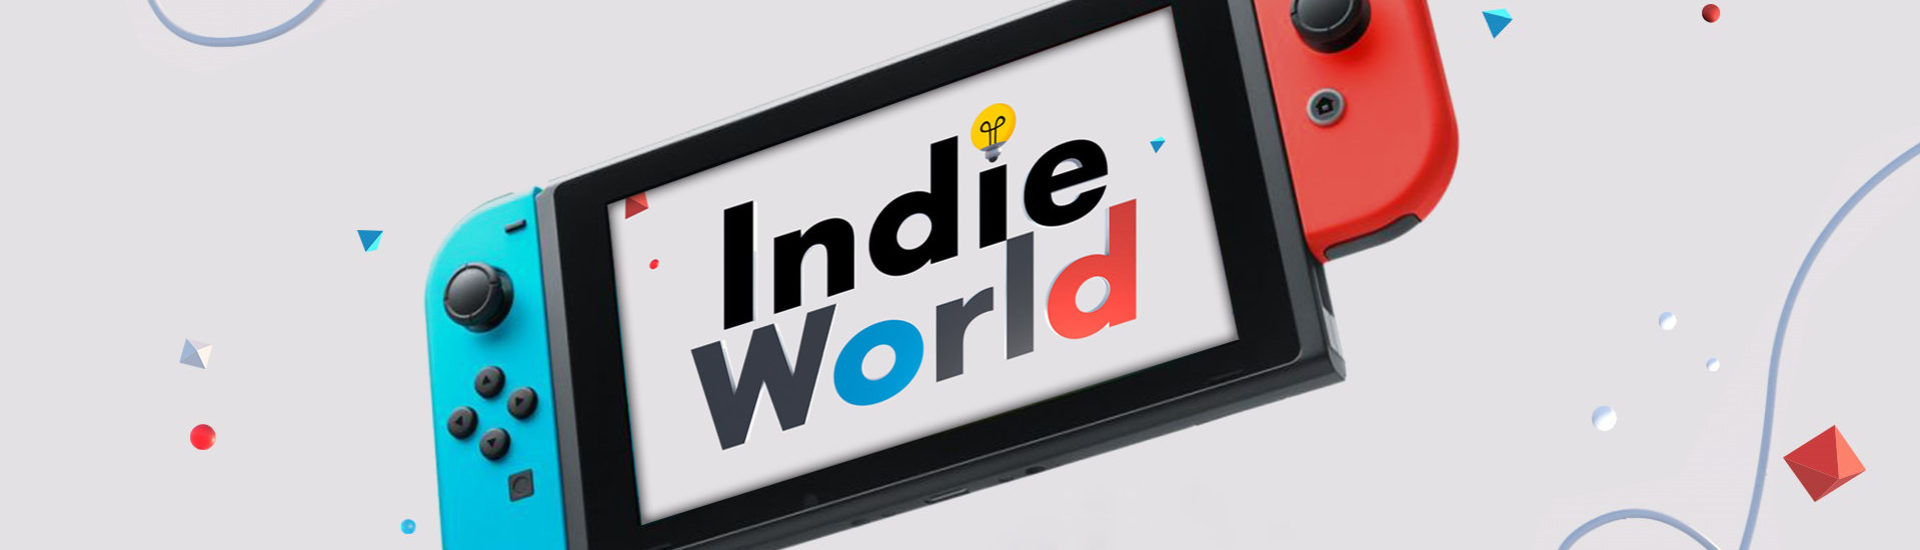 Nintendo Indie Direct: Indie-Games im Rampenlicht